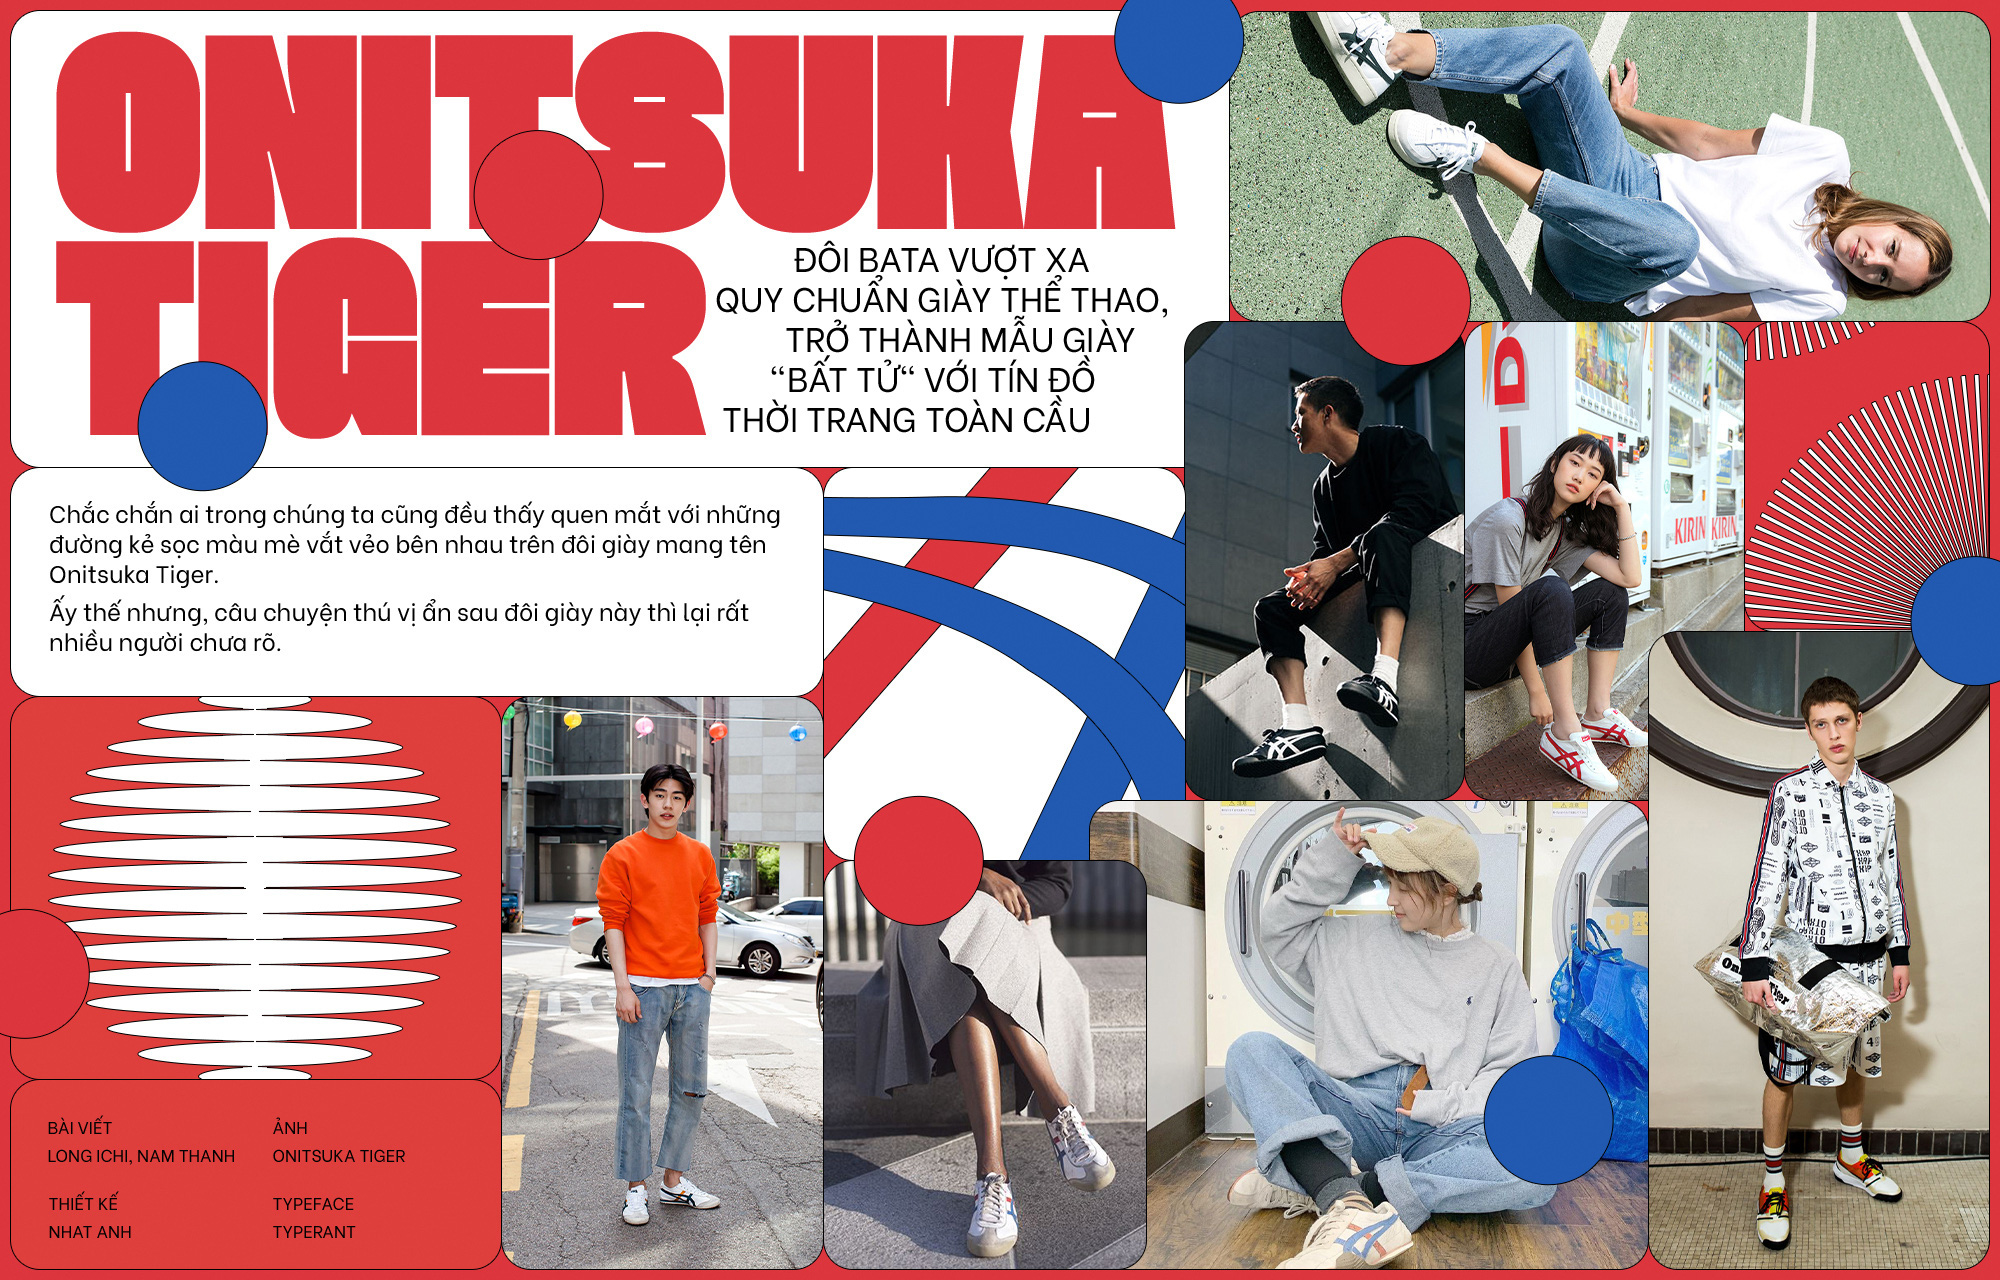 Onitsuka Tiger - một thương hiệu mang lại sự độc đáo và phong cách từ Nhật Bản. Được thiết kế với sự tinh tế và đơn giản, những đôi giày này sẽ giúp bạn tỏa sáng và thu hút ánh nhìn từ đám đông. Hãy cùng xem hình ảnh để khám phá những dòng sản phẩm tuyệt vời này.